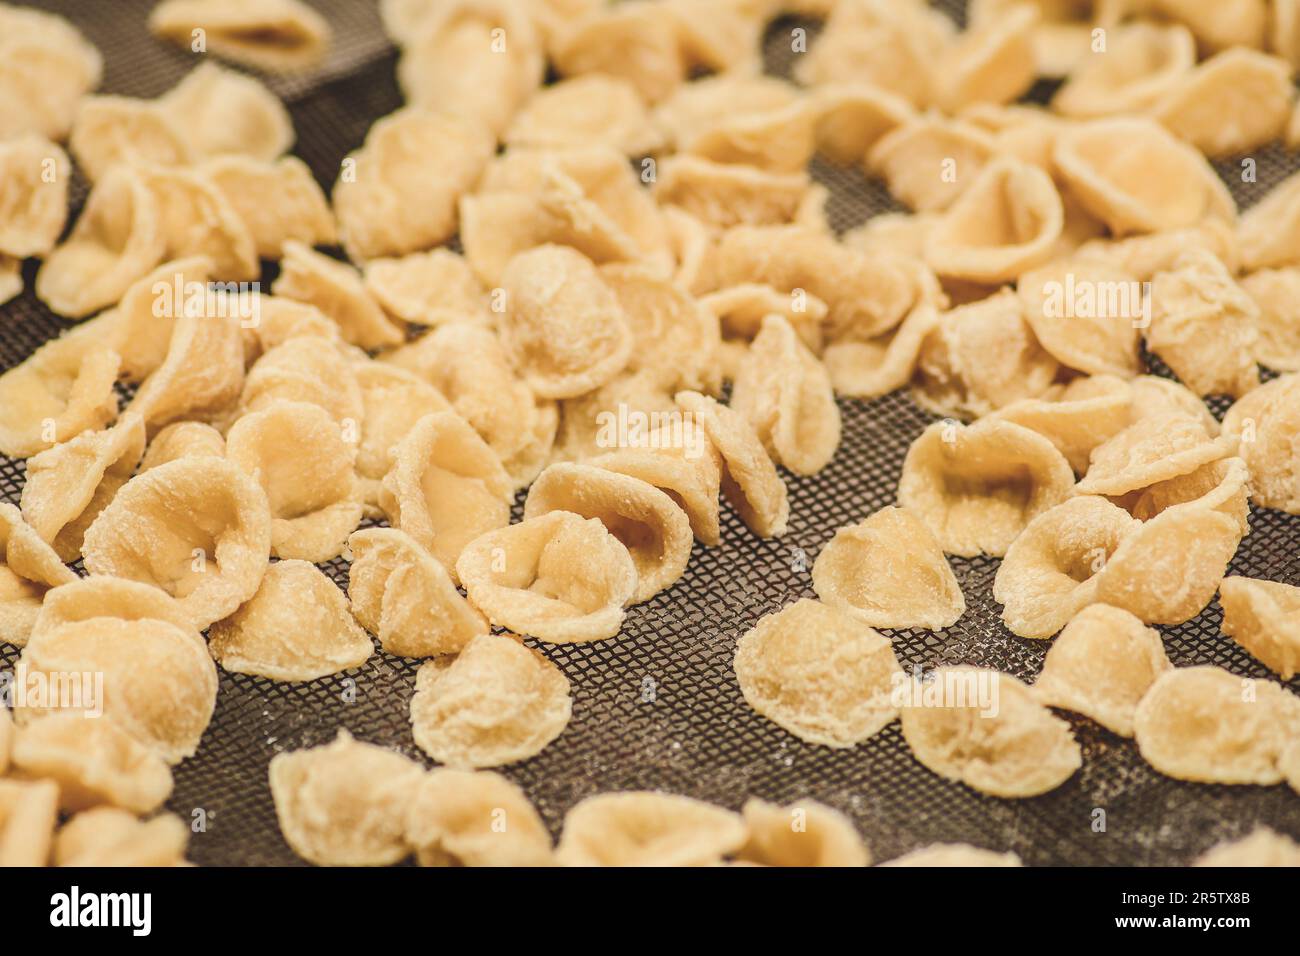 Orecchiette ou orecchietta fraîche, pâtes faites à la main avec du blé dur et de l'eau, typique de Puglia ou Apulia, une région du sud de l'Italie, gros plan Banque D'Images